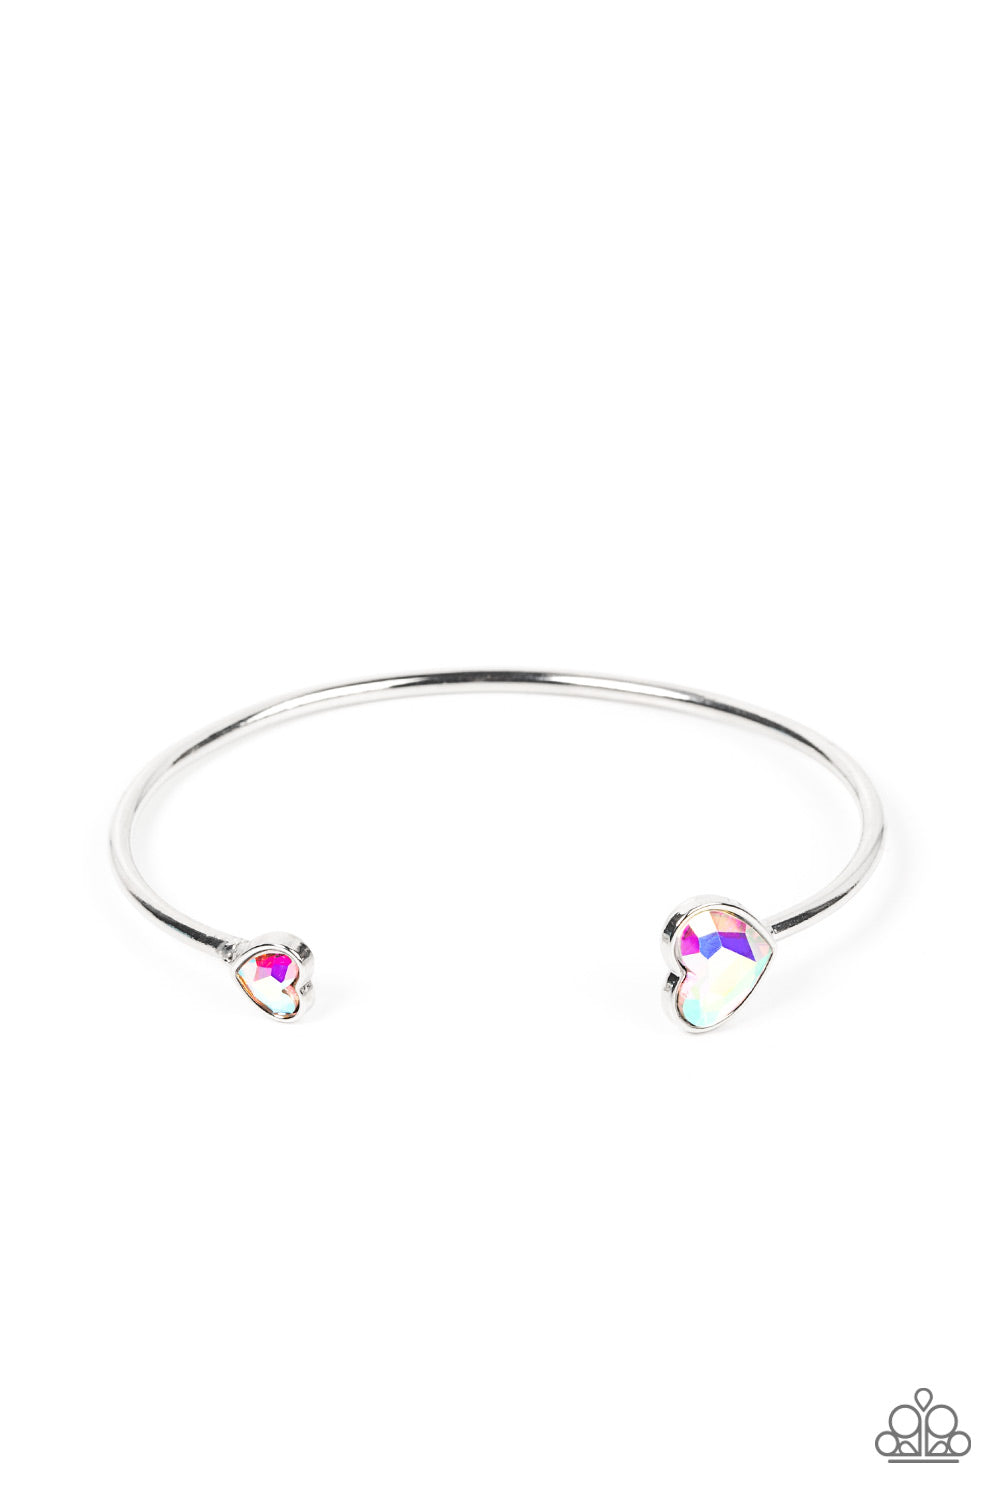 Unrequited Love - Multi Cuff Bracelet - Princess Glam Shop